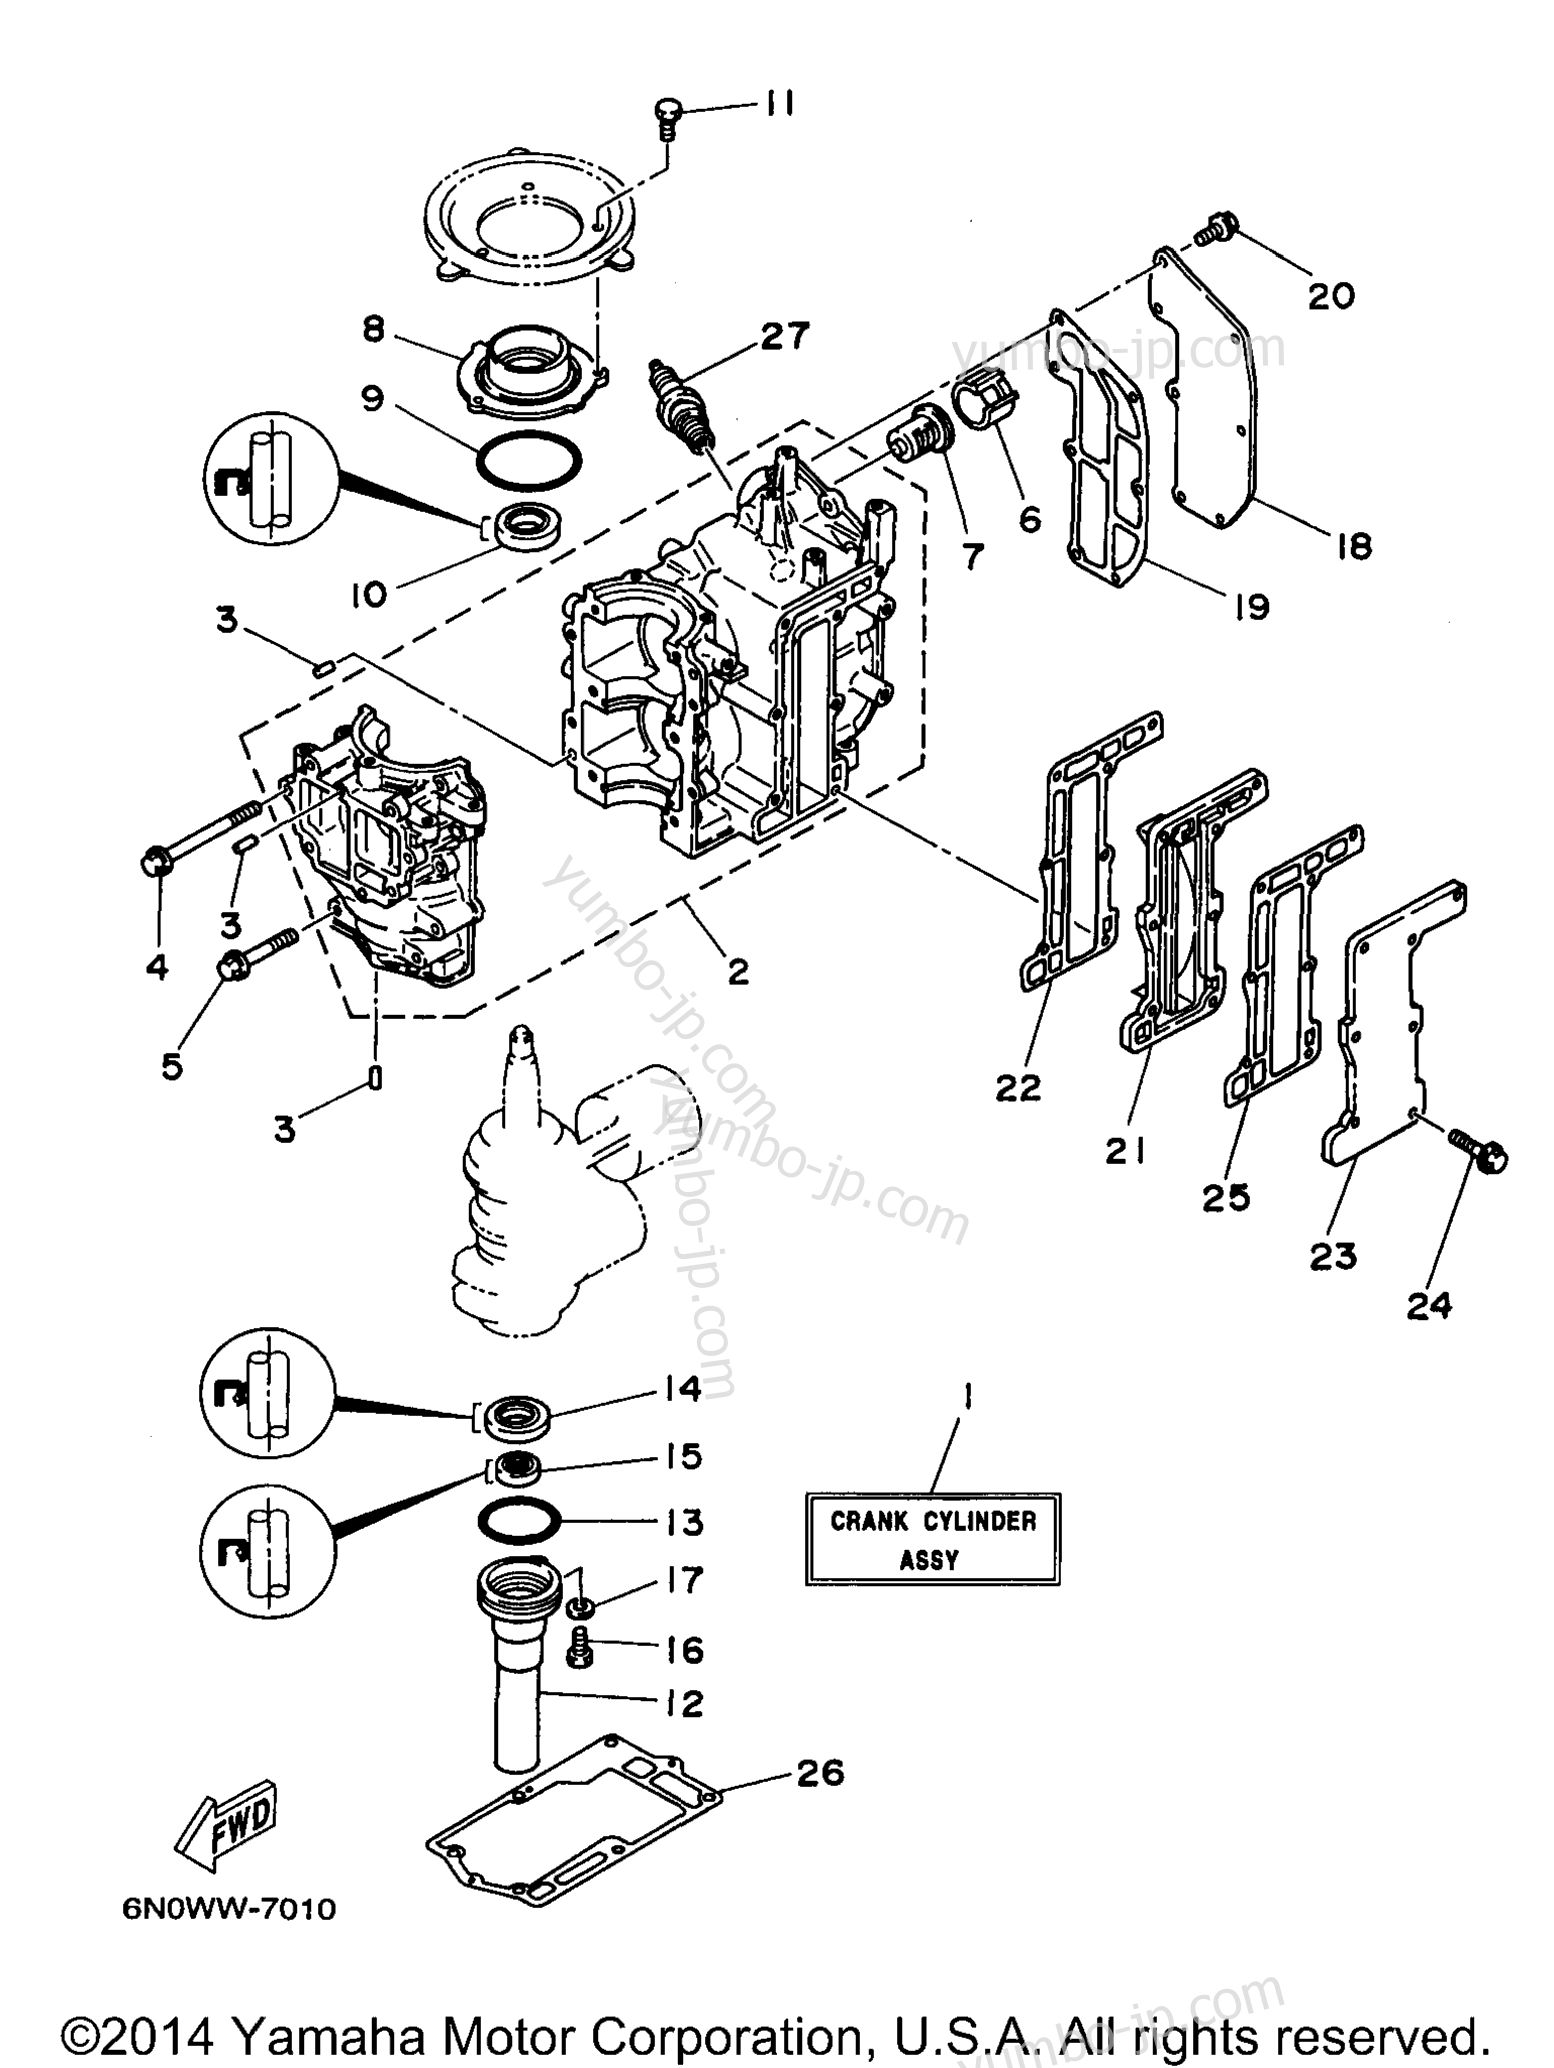 Cylinder Crankcase для лодочных моторов YAMAHA 8MSHW 1998 г.